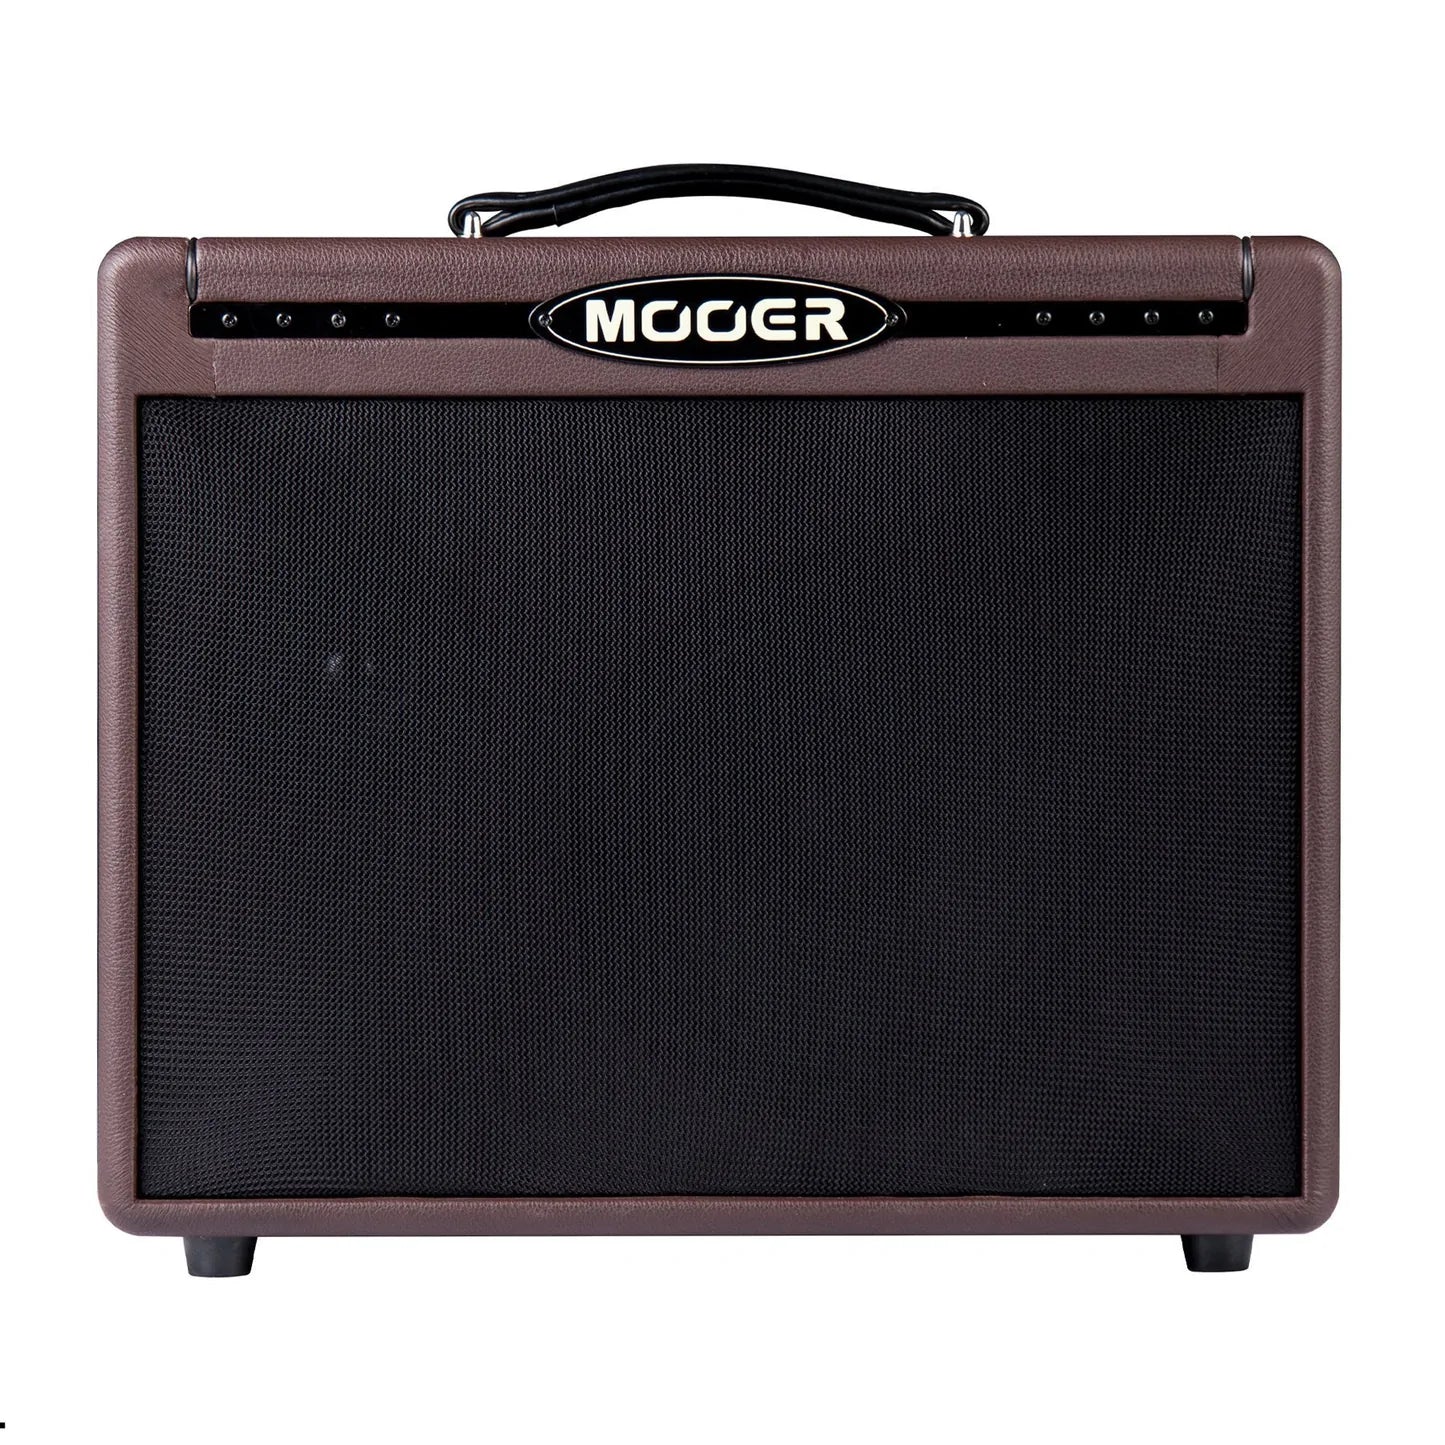 Mooer Shadow SD50A 50 Watt Acoustic Guitar Amplifier